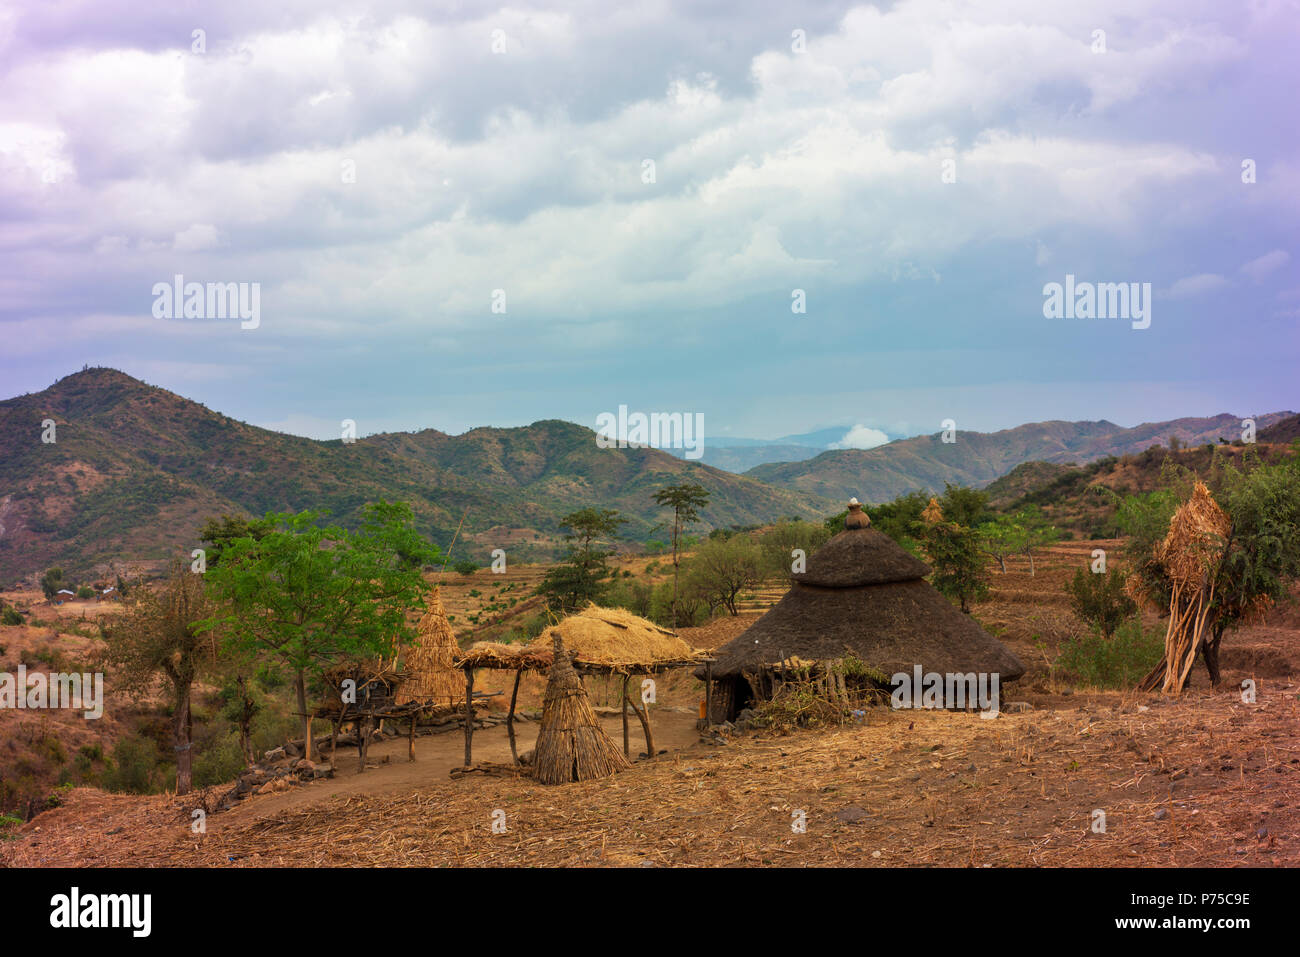 Típica escena rural en el sur de Etiopía occidental mostrando hogar tradicional. Foto de stock